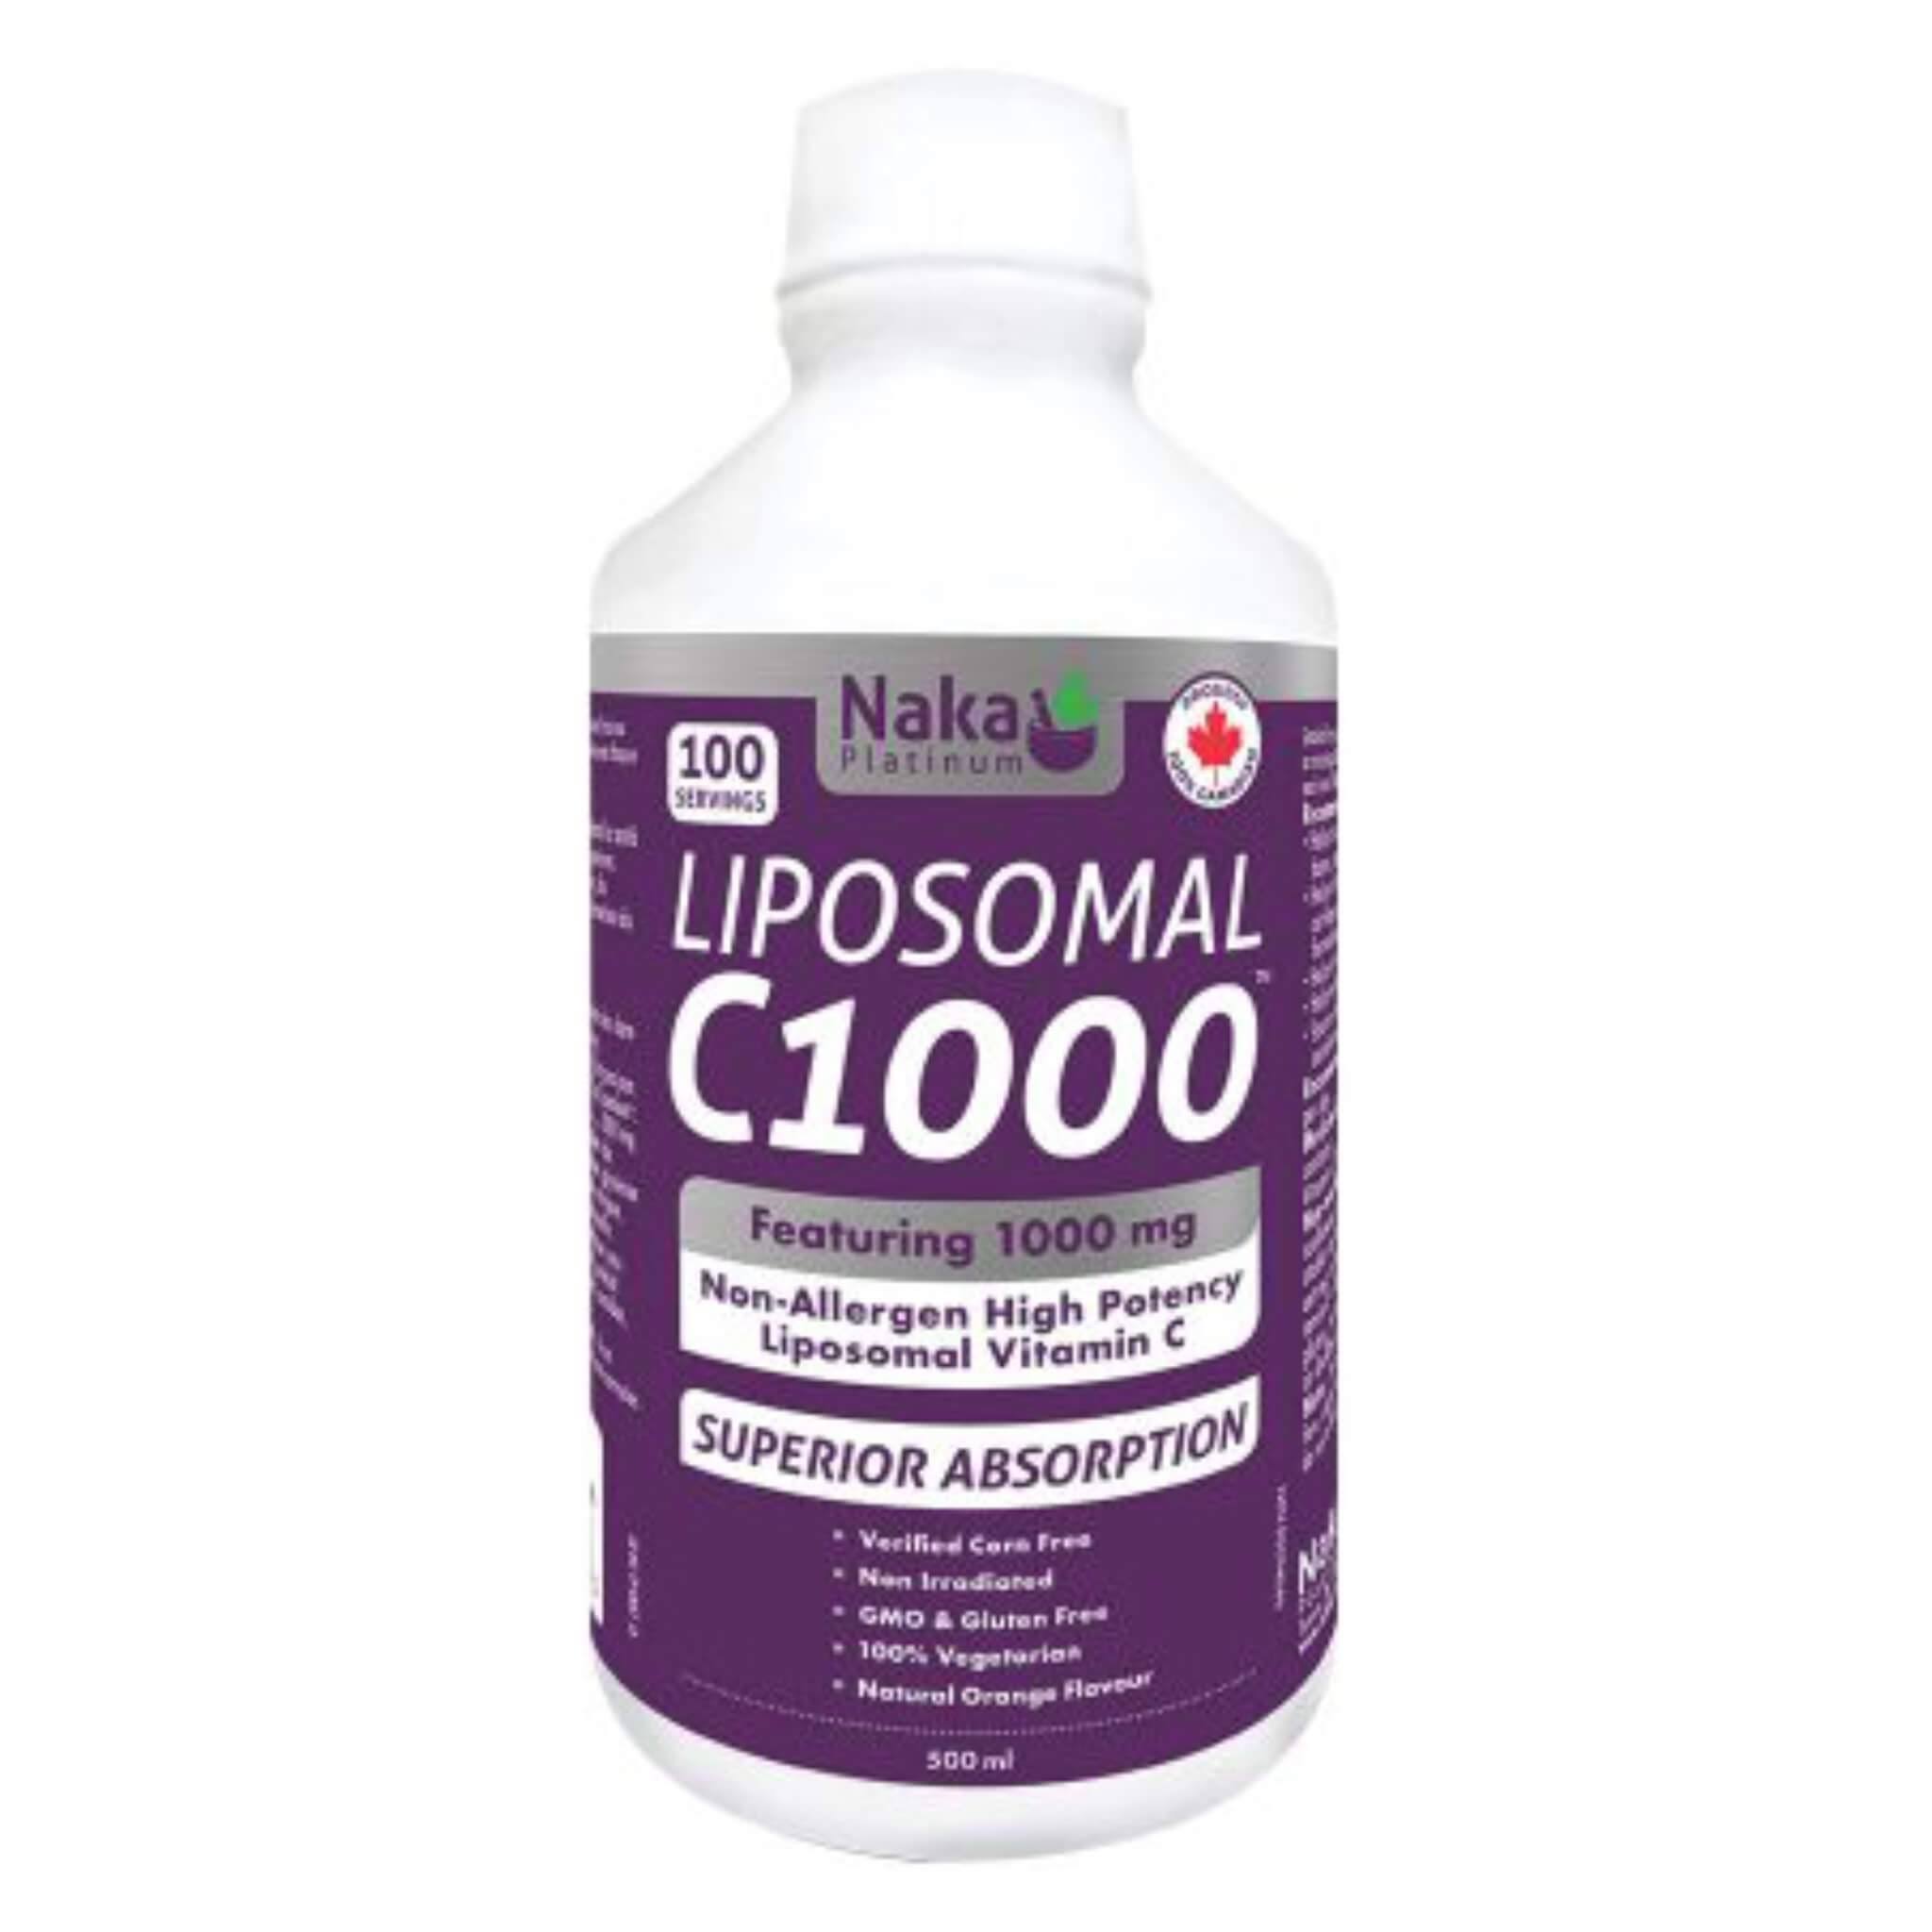 NAKA Platinum Liposomal C1000 (600 ml)